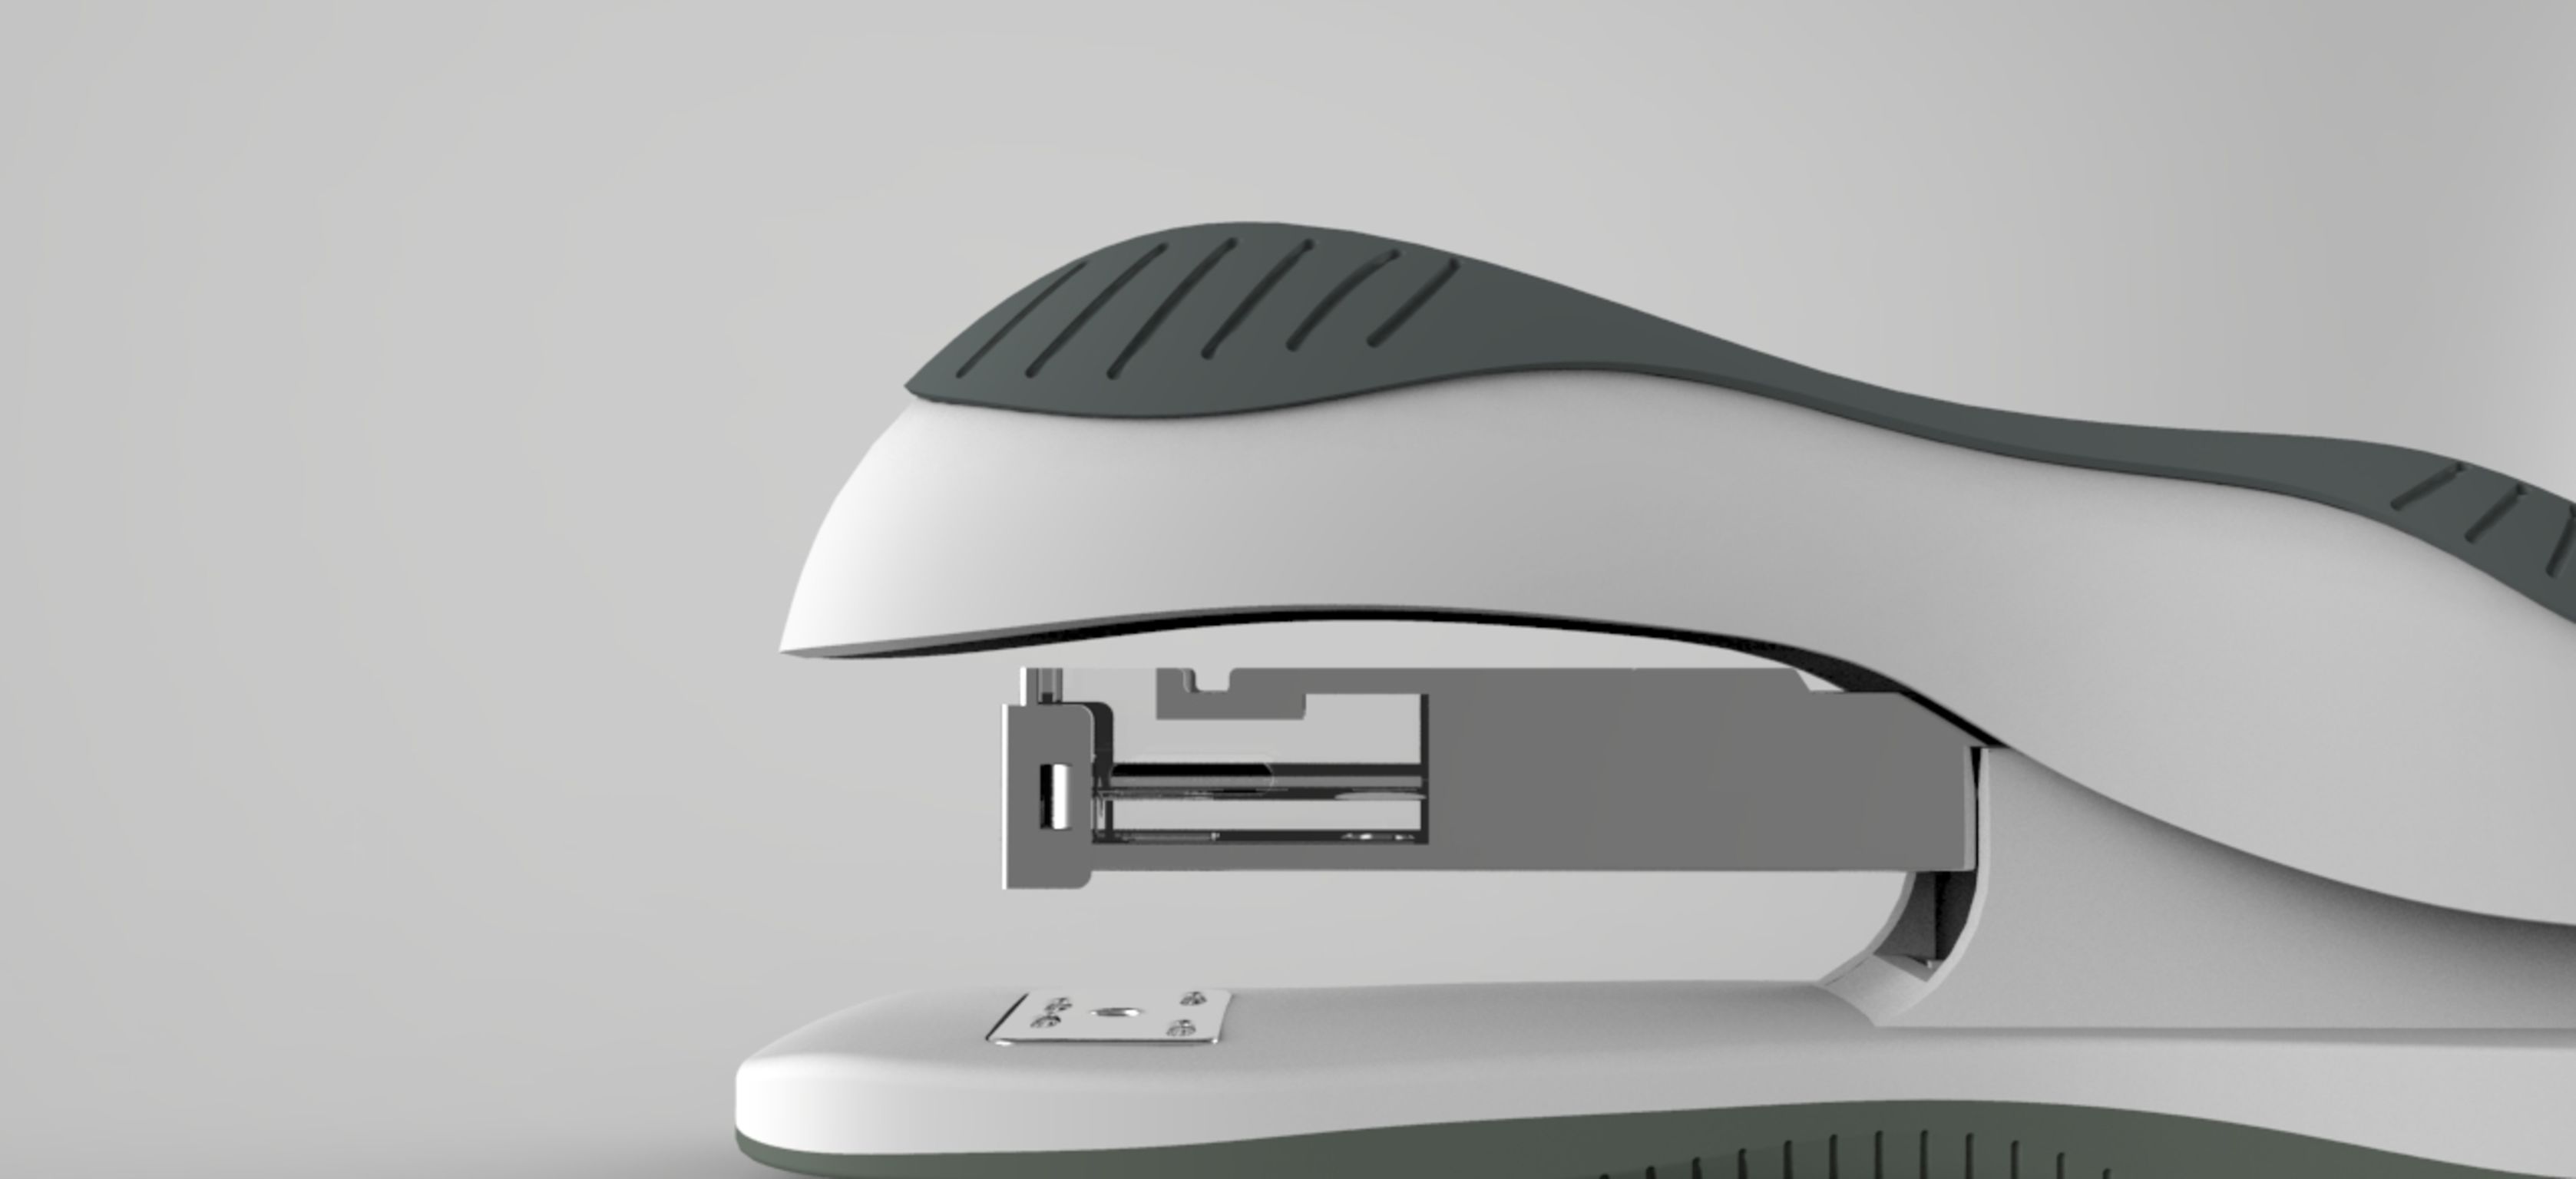 Easy as stapler | iF WORLD DESIGN GUIDE